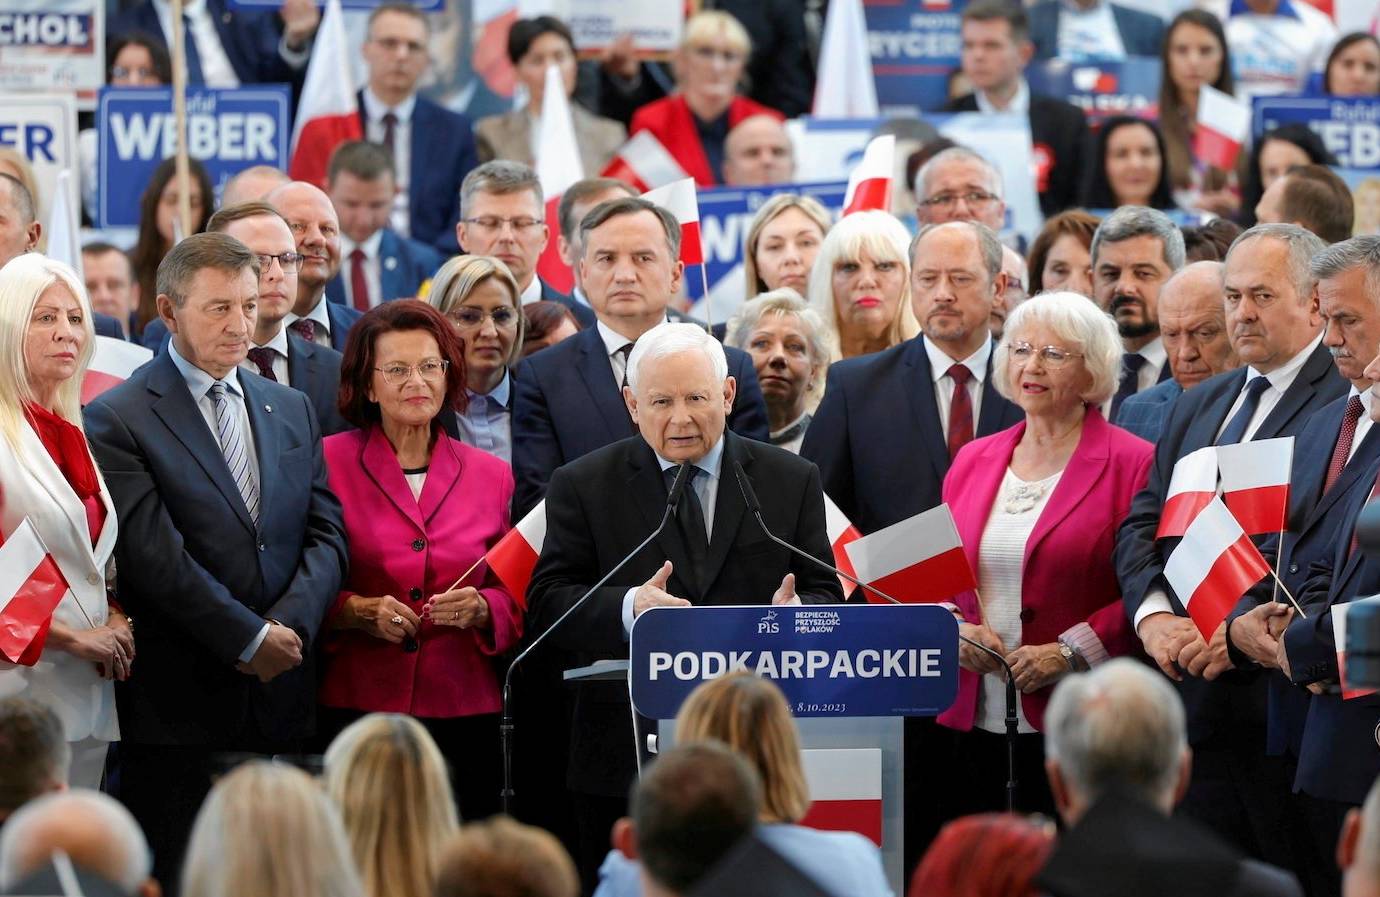 Konwencja PiS w Jasionce na Podkarpaciu. Prezes PiS Jarosław Kaczyński w otoczeniu partyjnych działaczy przemawia z podium z napisem "Podkarpackie"/